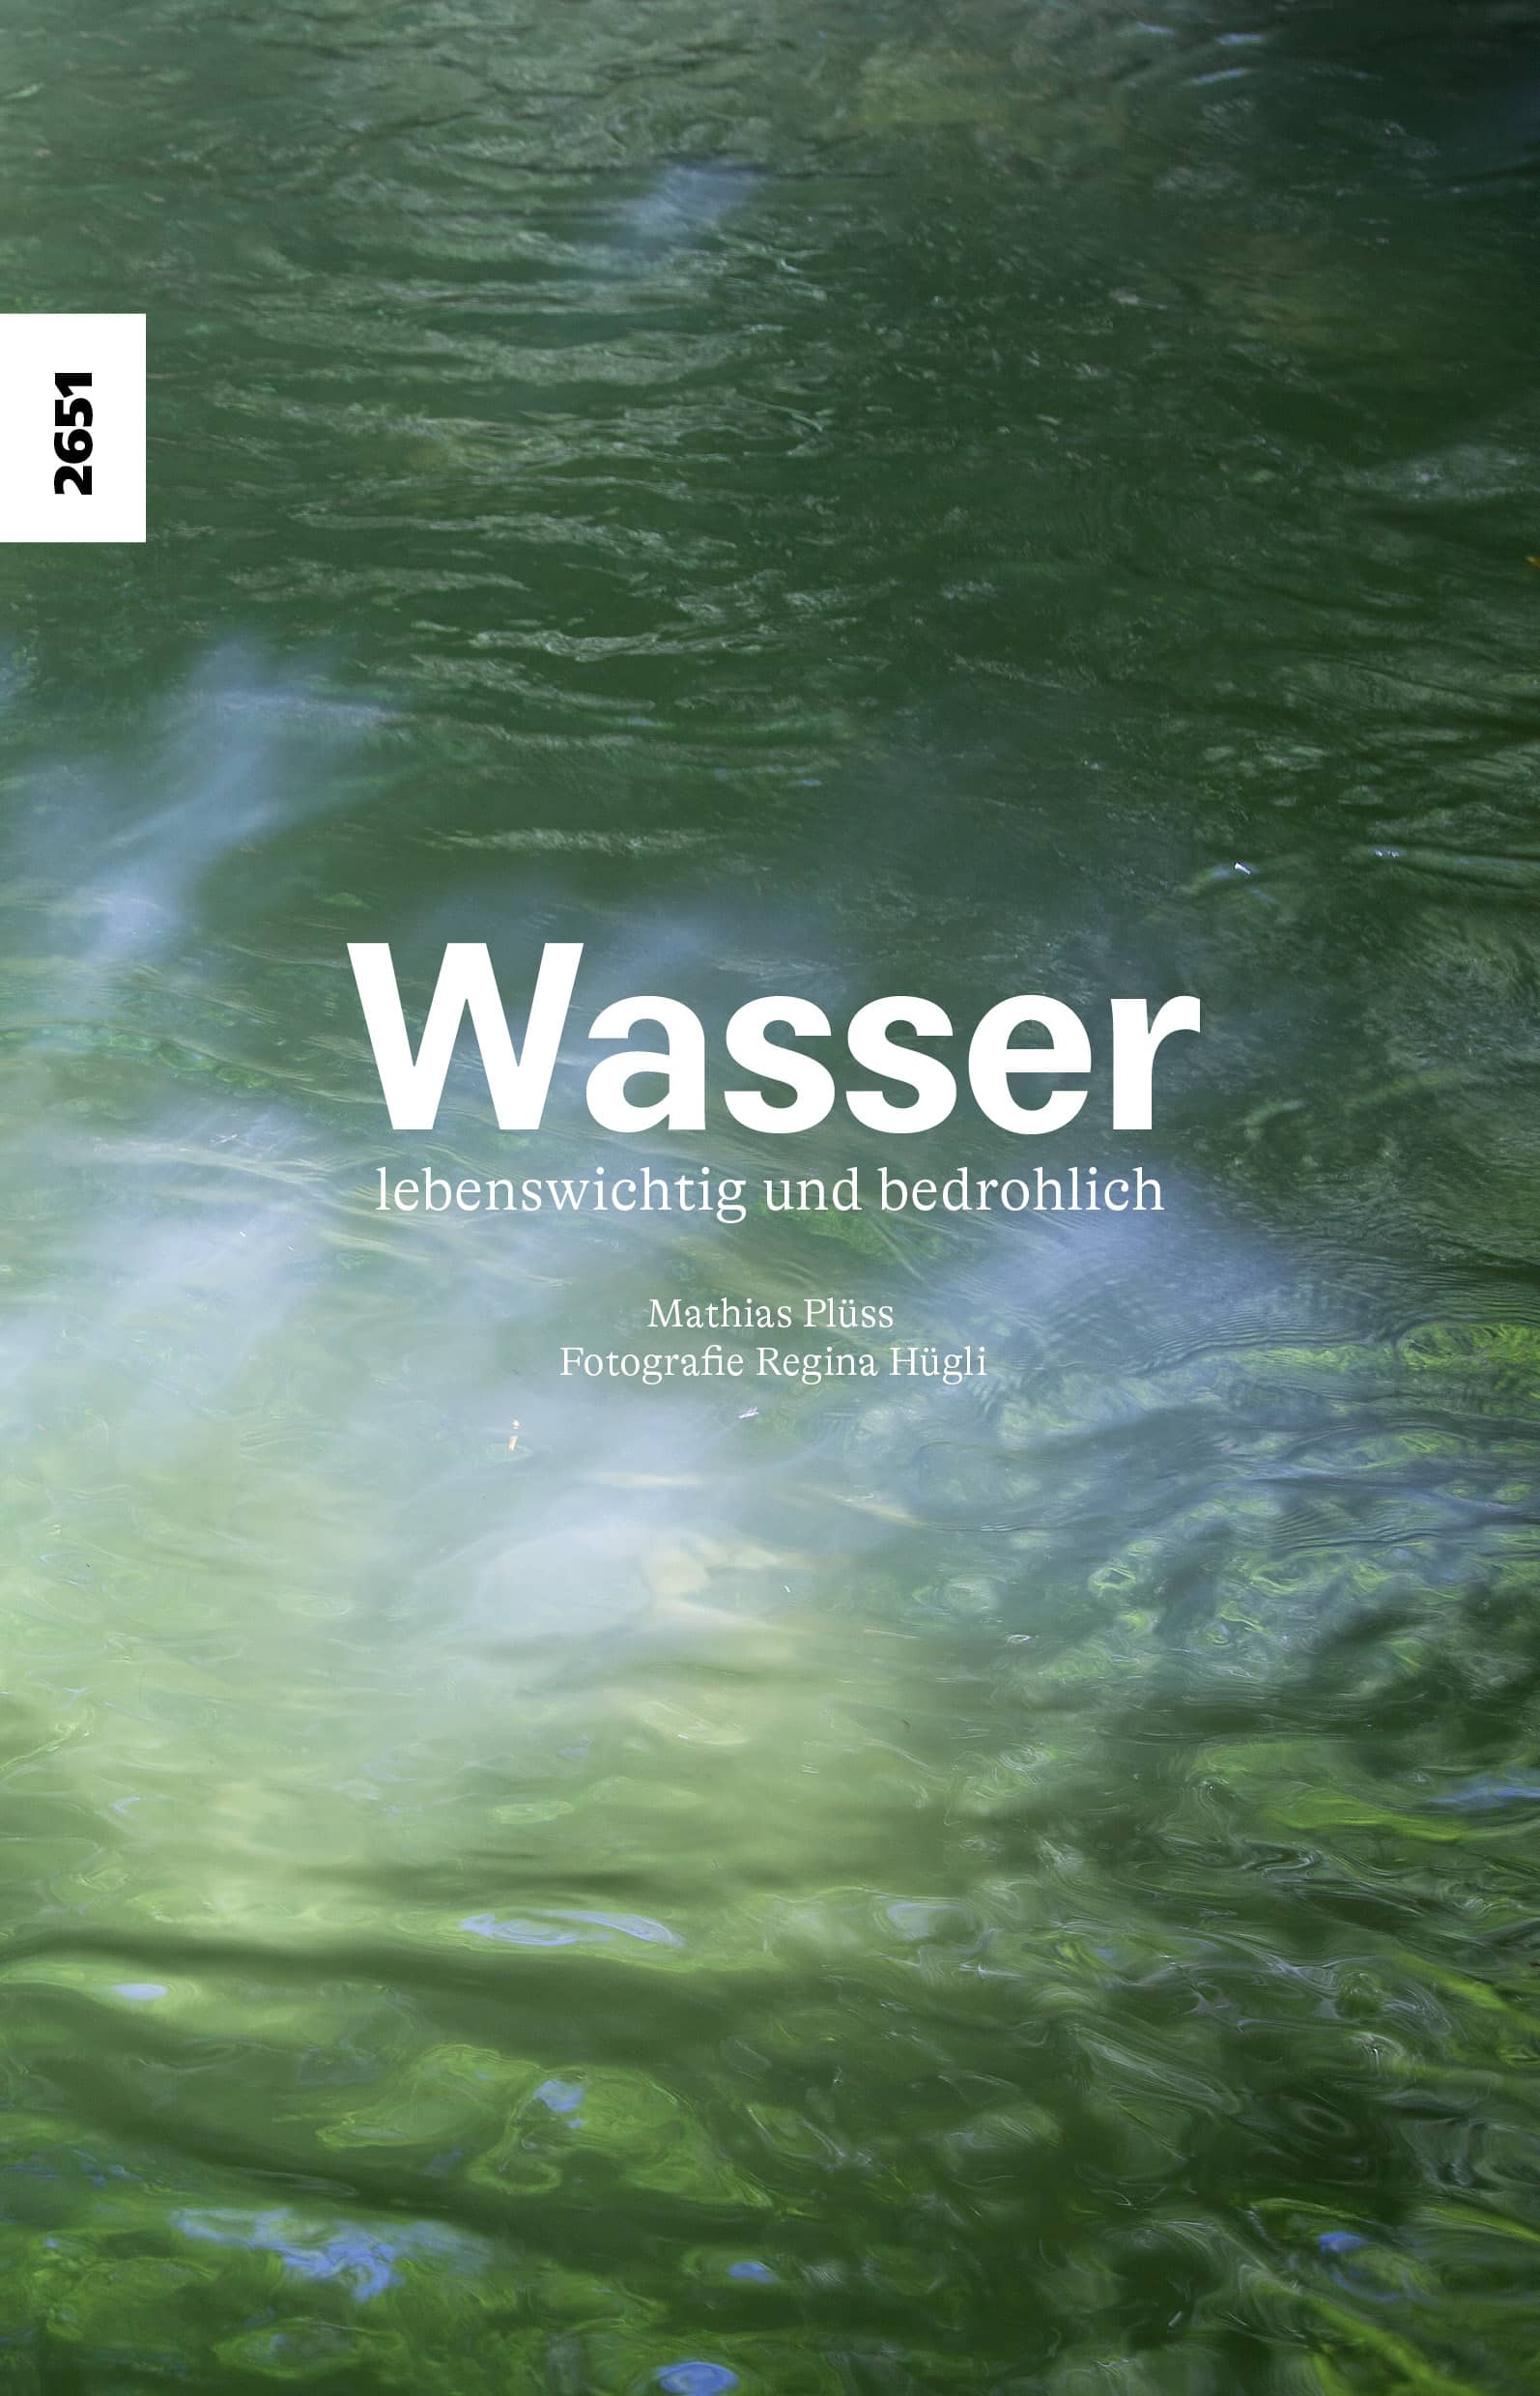 Wasser - lebenswichtig und bedrohlich, ein Sachbuch von Mathias Pluess, Illustration von Regina Huegli, SJW Verlag, Natur